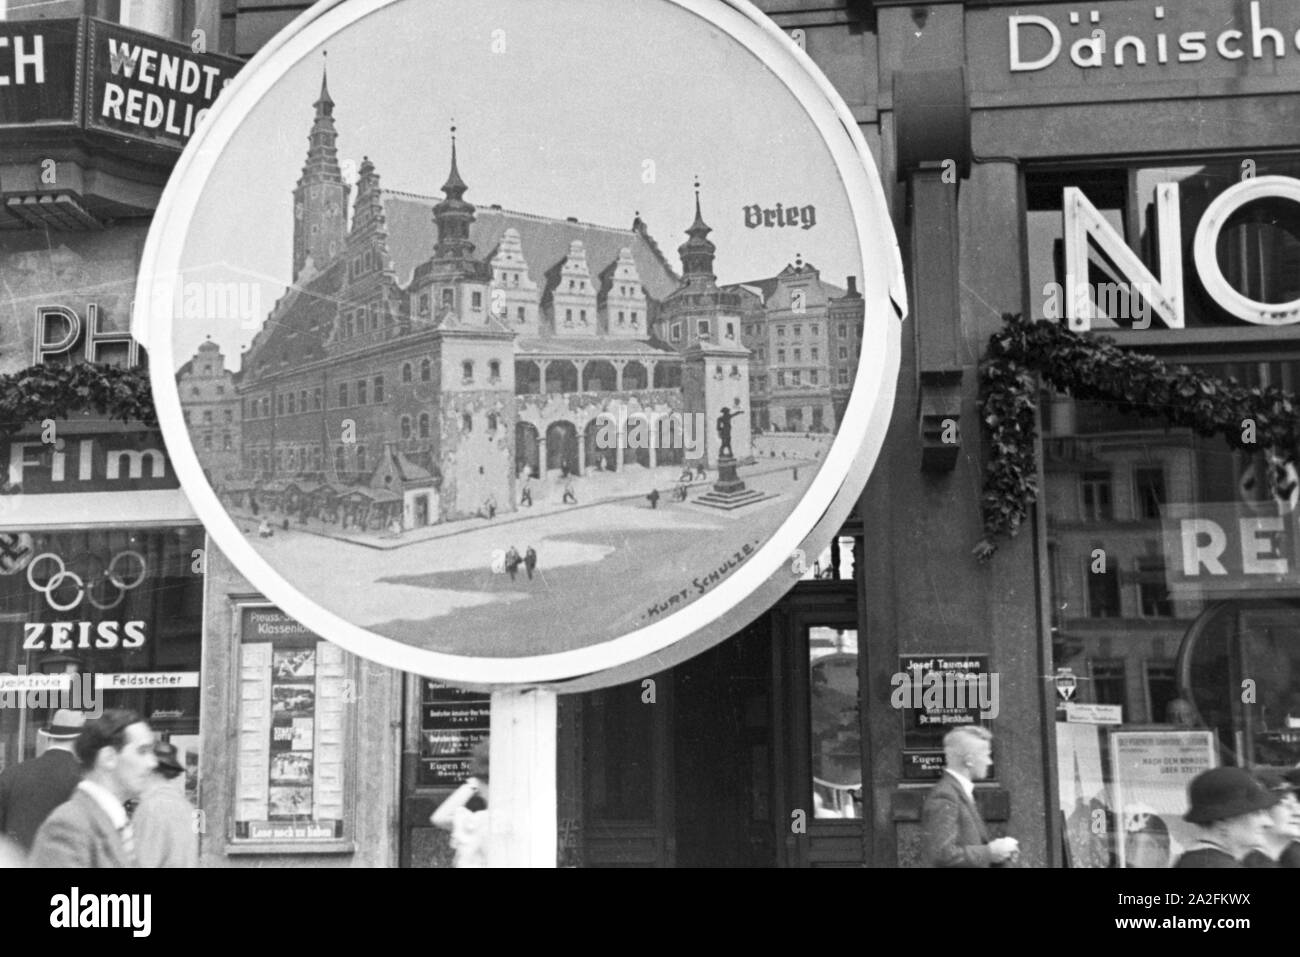 Eine Fotografie des Rathauses der Stadt Brieg als Display in den Straße von Berlin, Deutschland 1930er Jahre. A photo of the city hall of Brieg, shot by the photographer Schulze, is displayed in a street of Berlin, Germany 1930s. Stock Photo